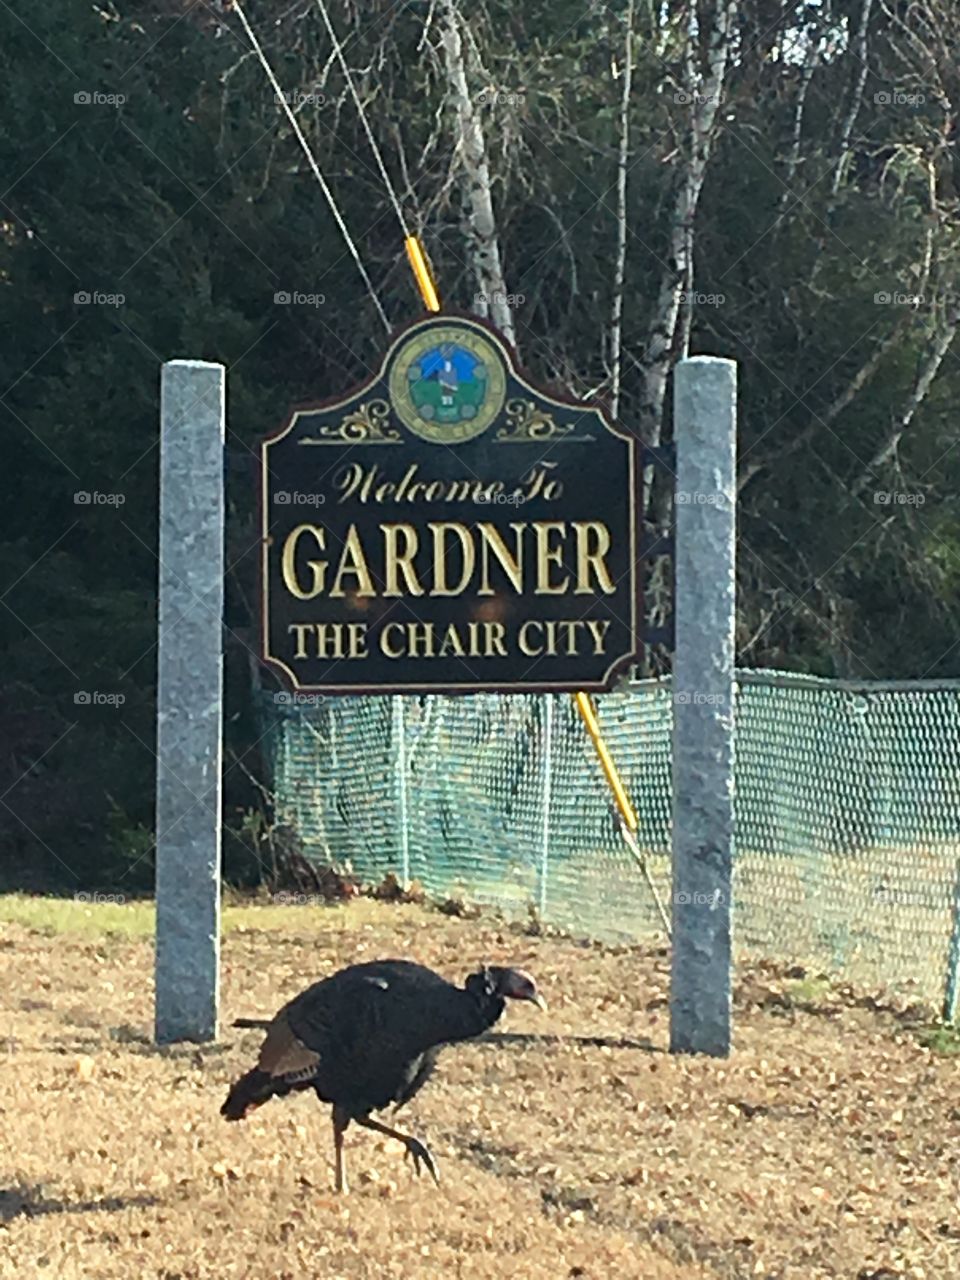 Wild turkey in Gardner Mass 🦃